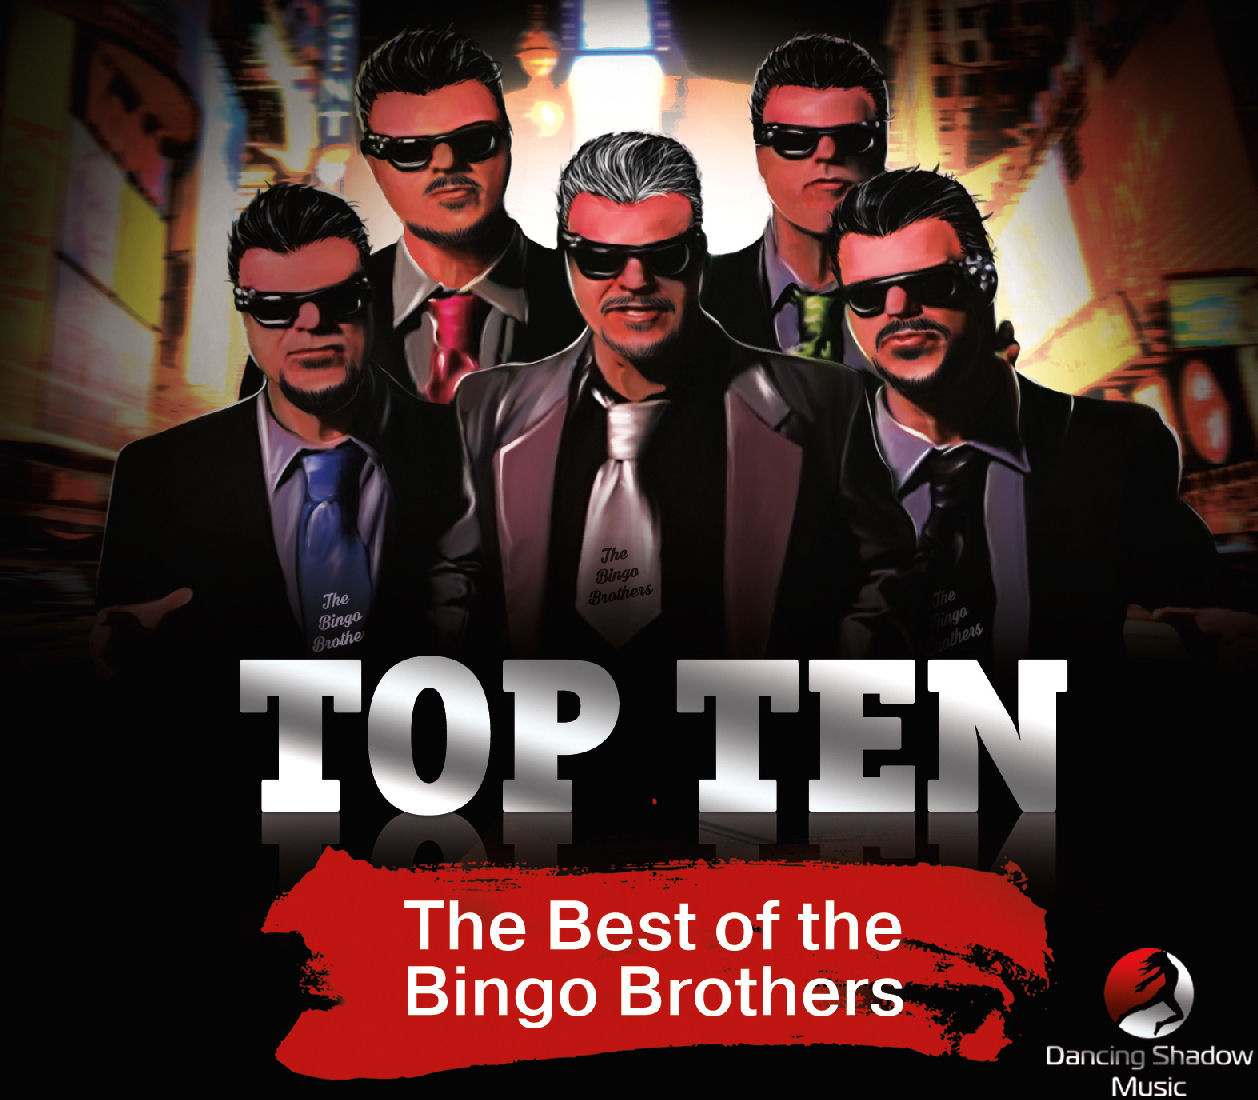  The Bingo Brothers – Top Ten